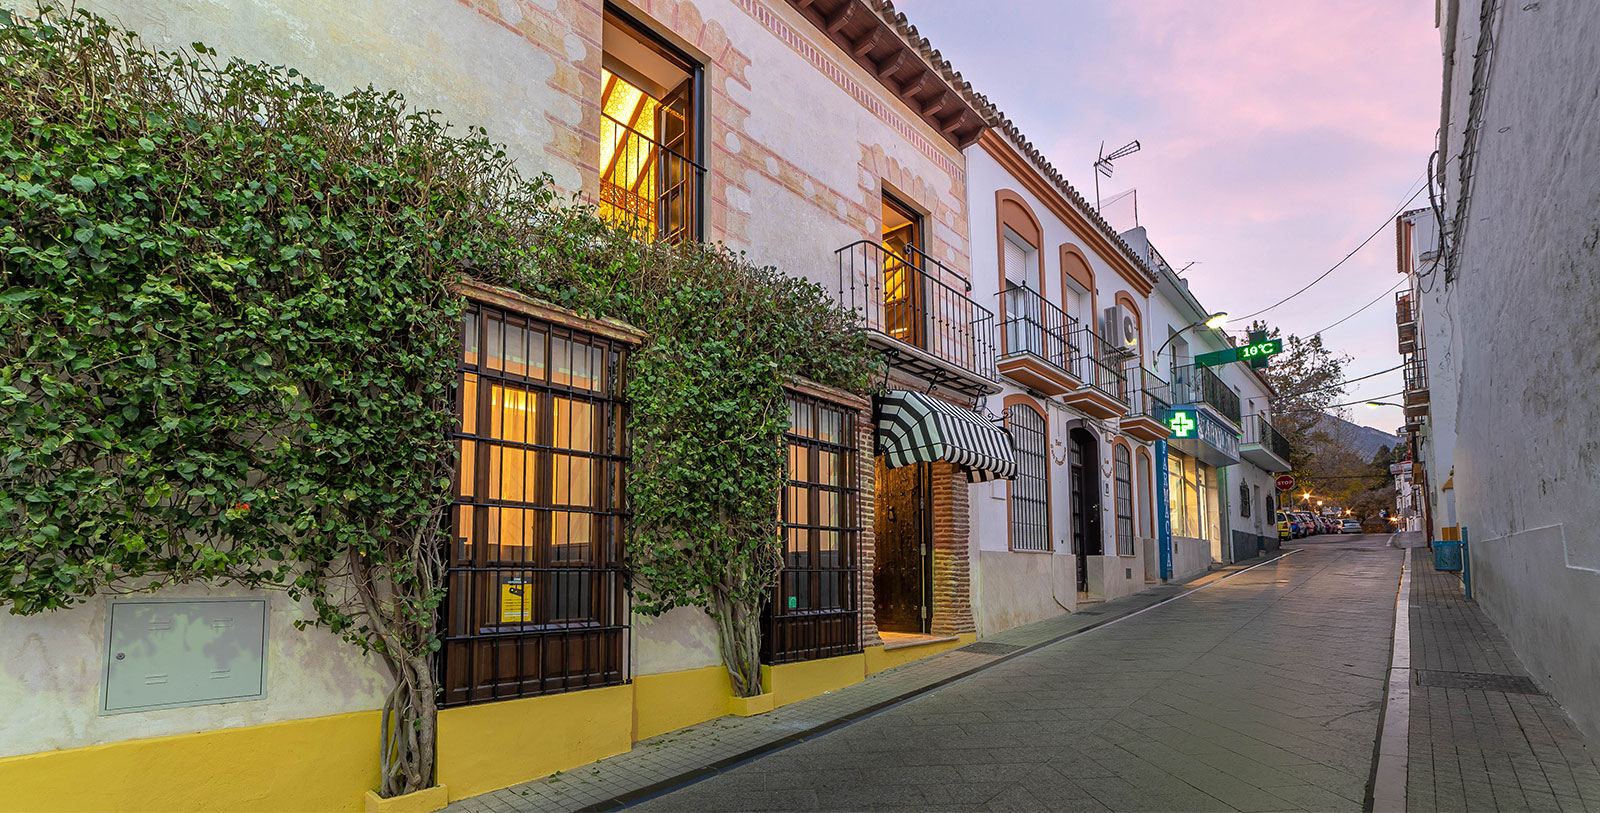 Visit the Plaza de los Naranjos, home to the Hermitage of Santiago, the Town Hall and the Casa del Corregidor.